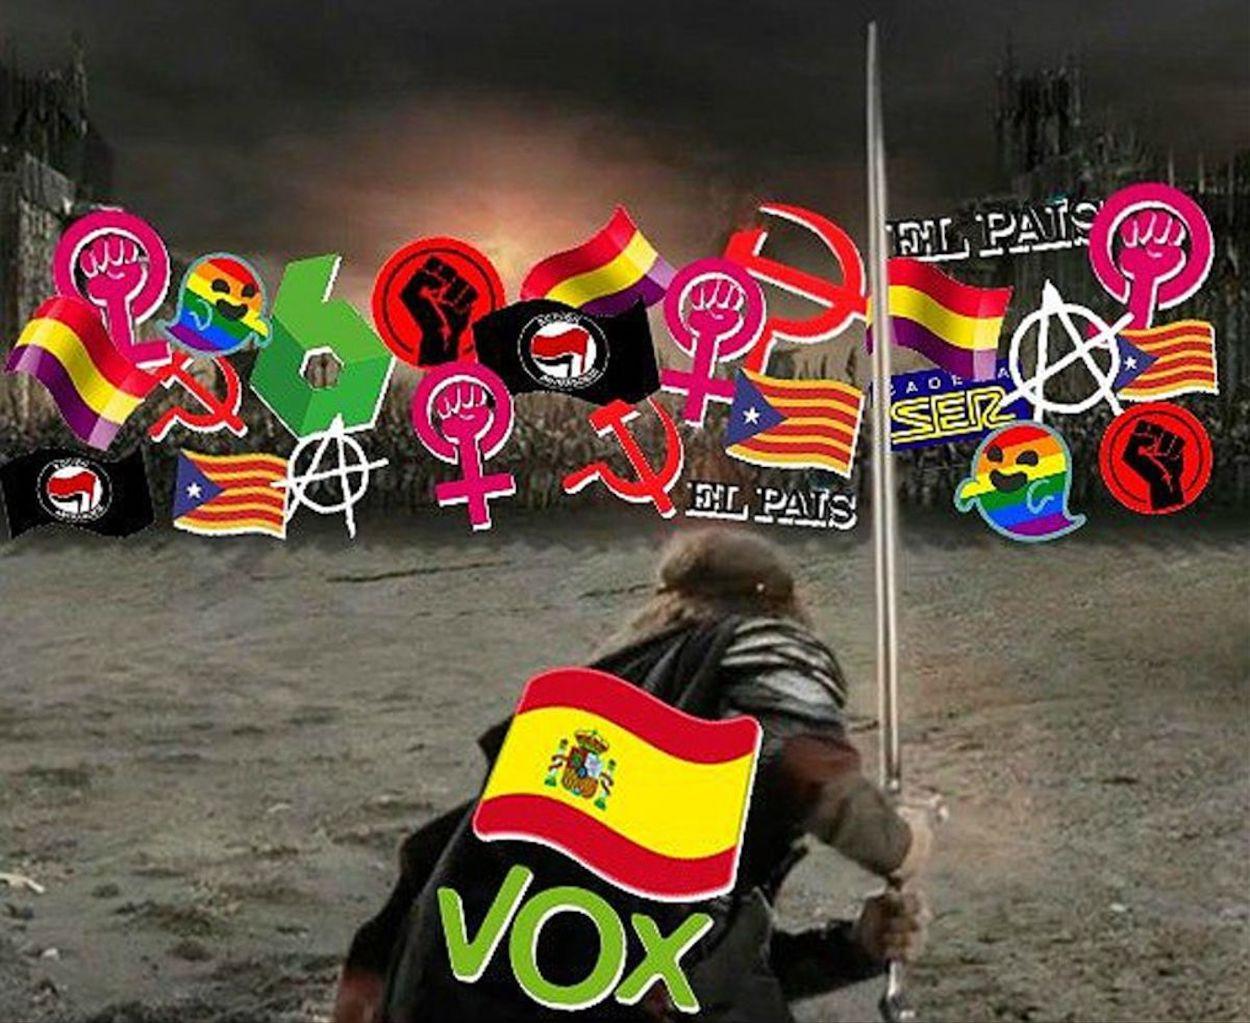 Mensaje  de Vox que incita a combatir a feministas, gais y prensa. EP